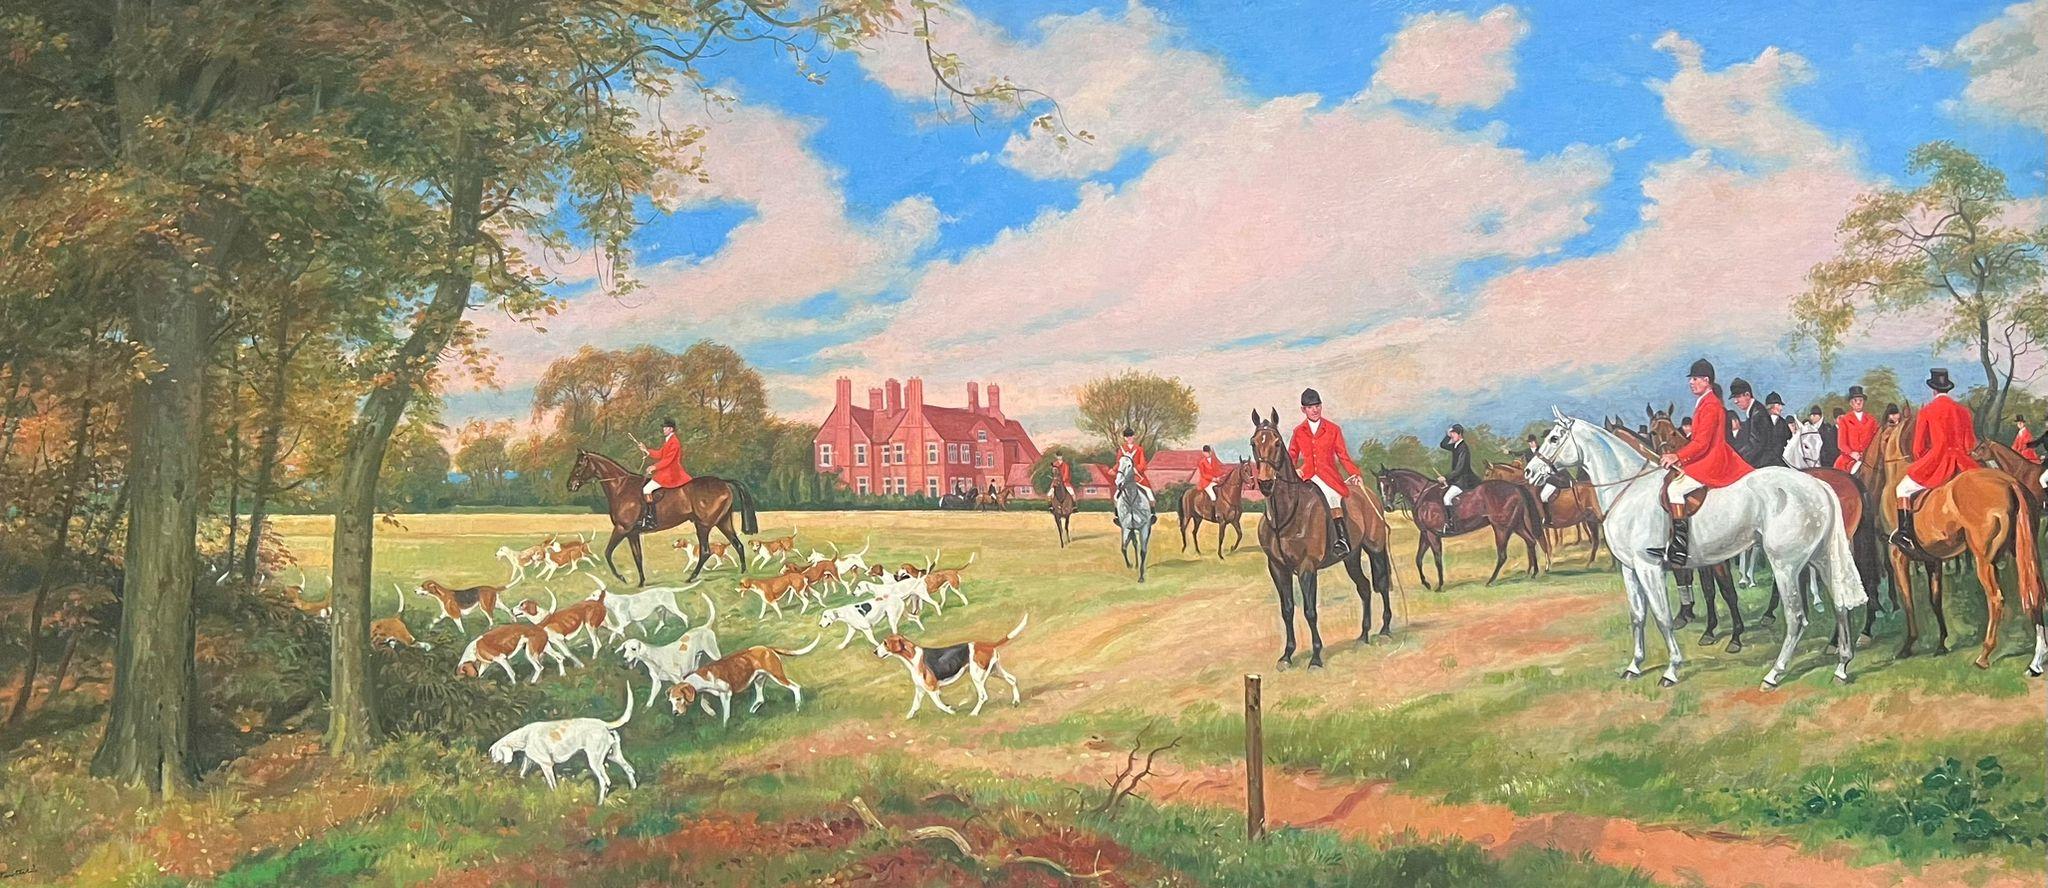 Grande peinture à l'huile britannique d'une scène de chasse, chevaux et cavaliers devant la maison